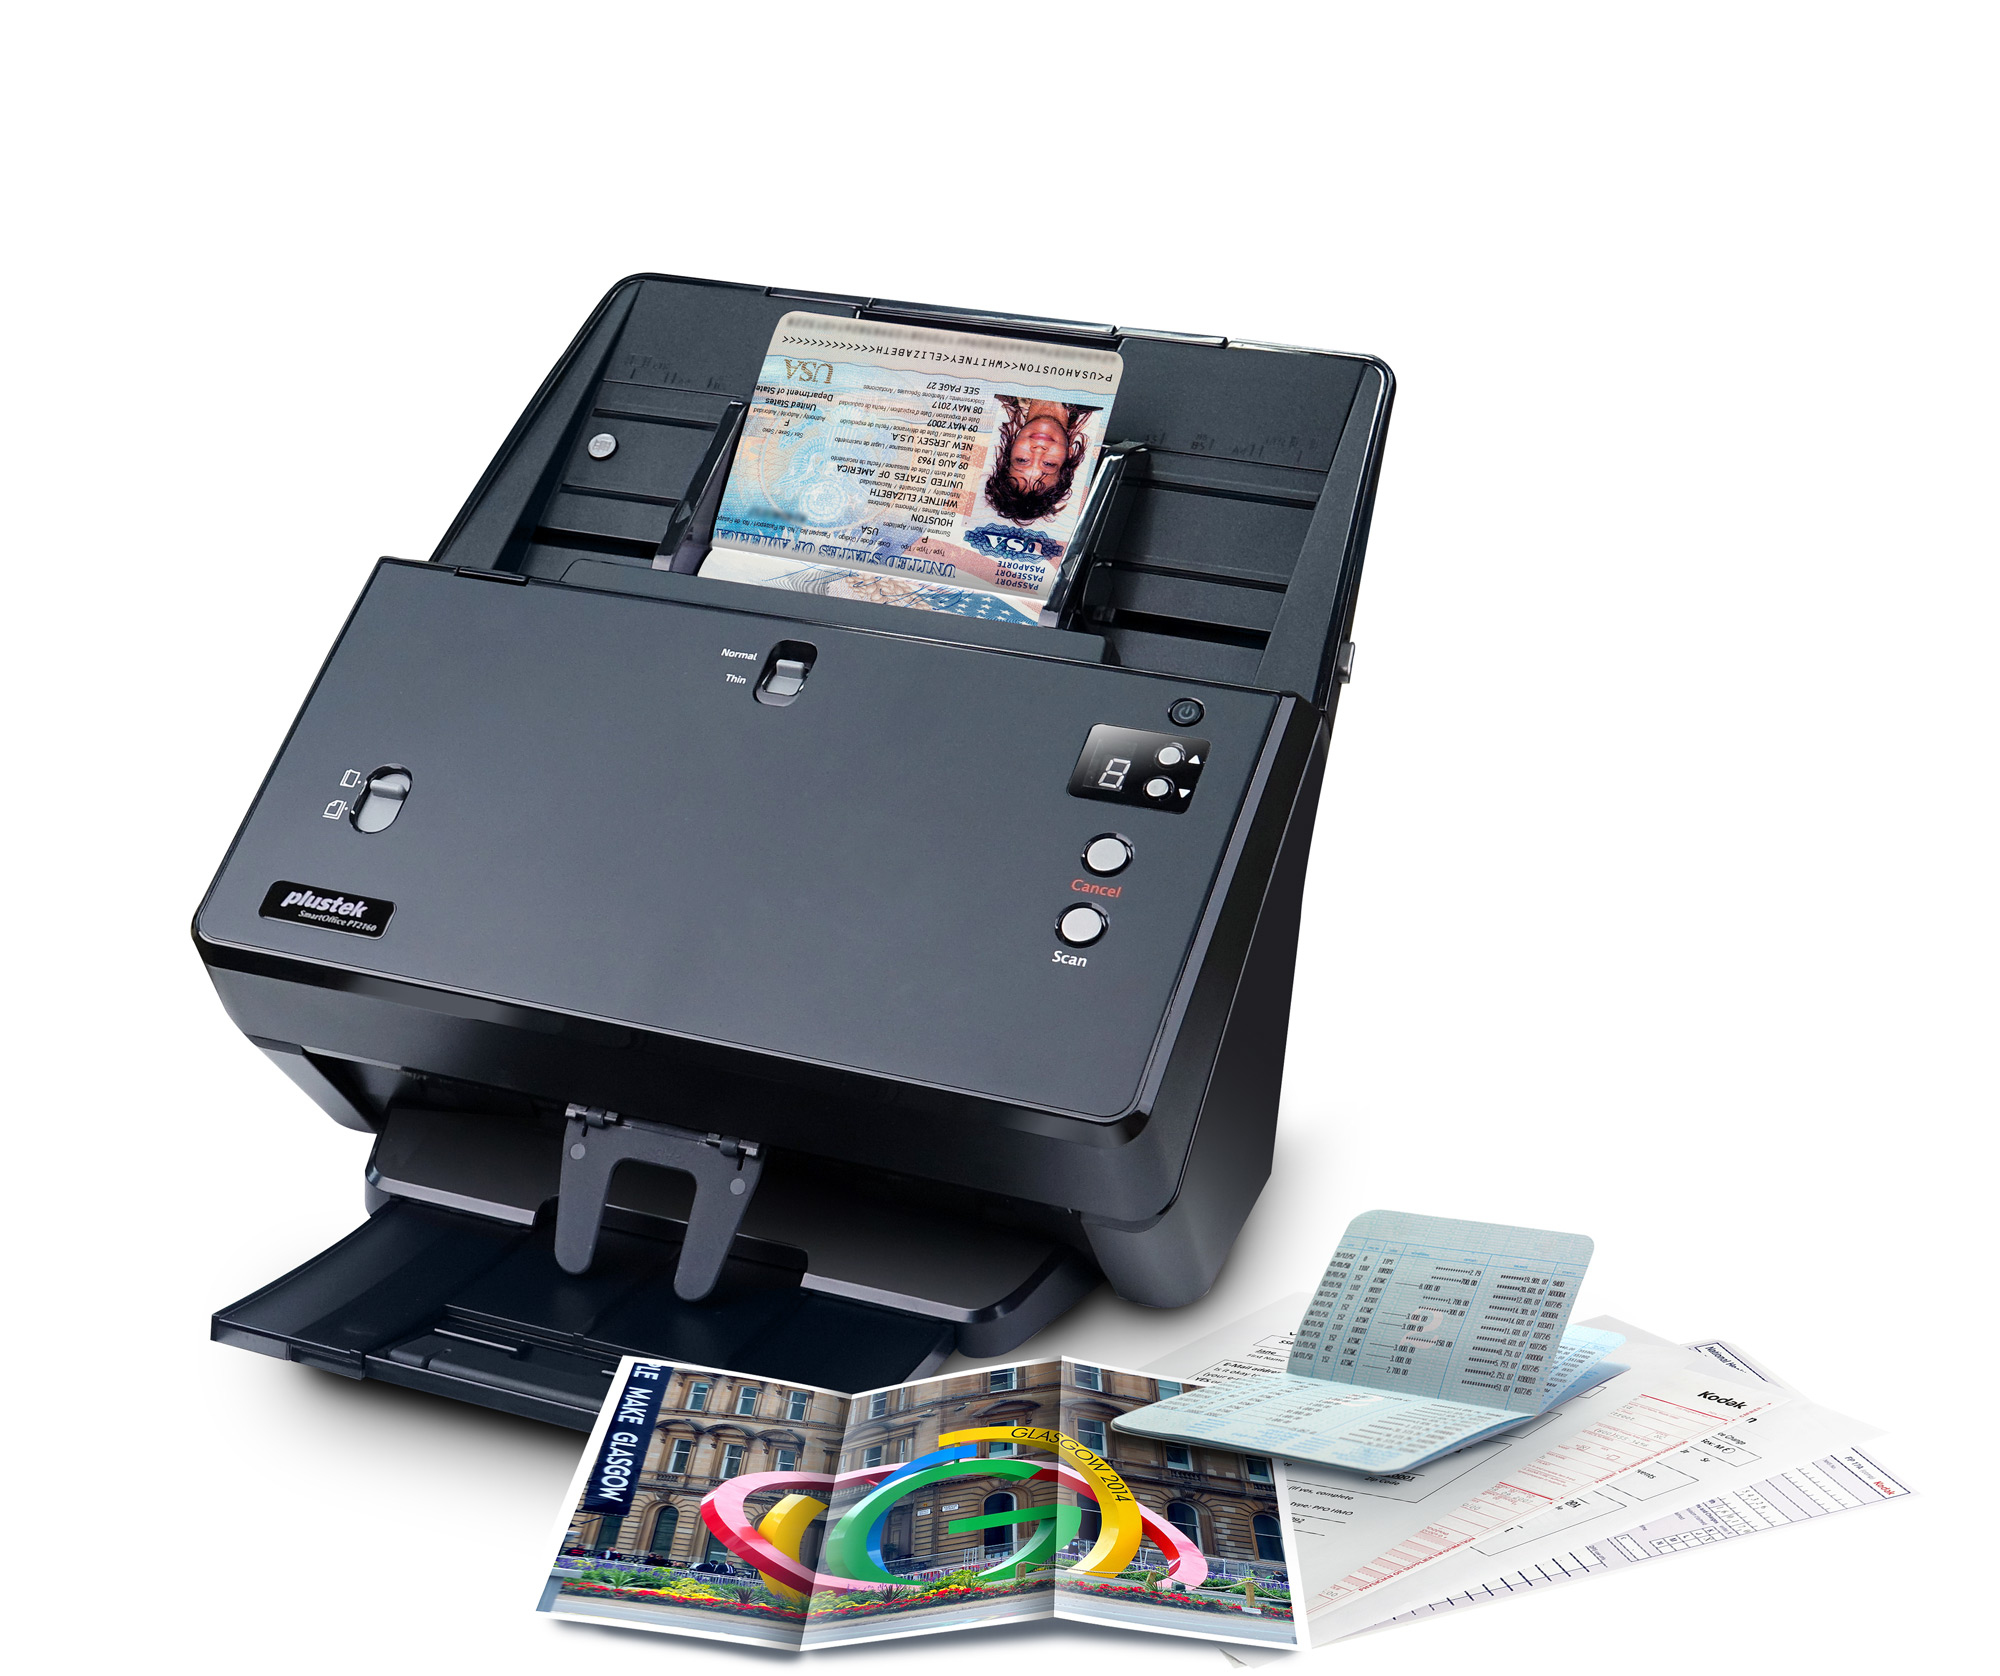 Plustek SmartOffice PT2160 600 x 600 DPI ADF-Scanner Schwarz A3